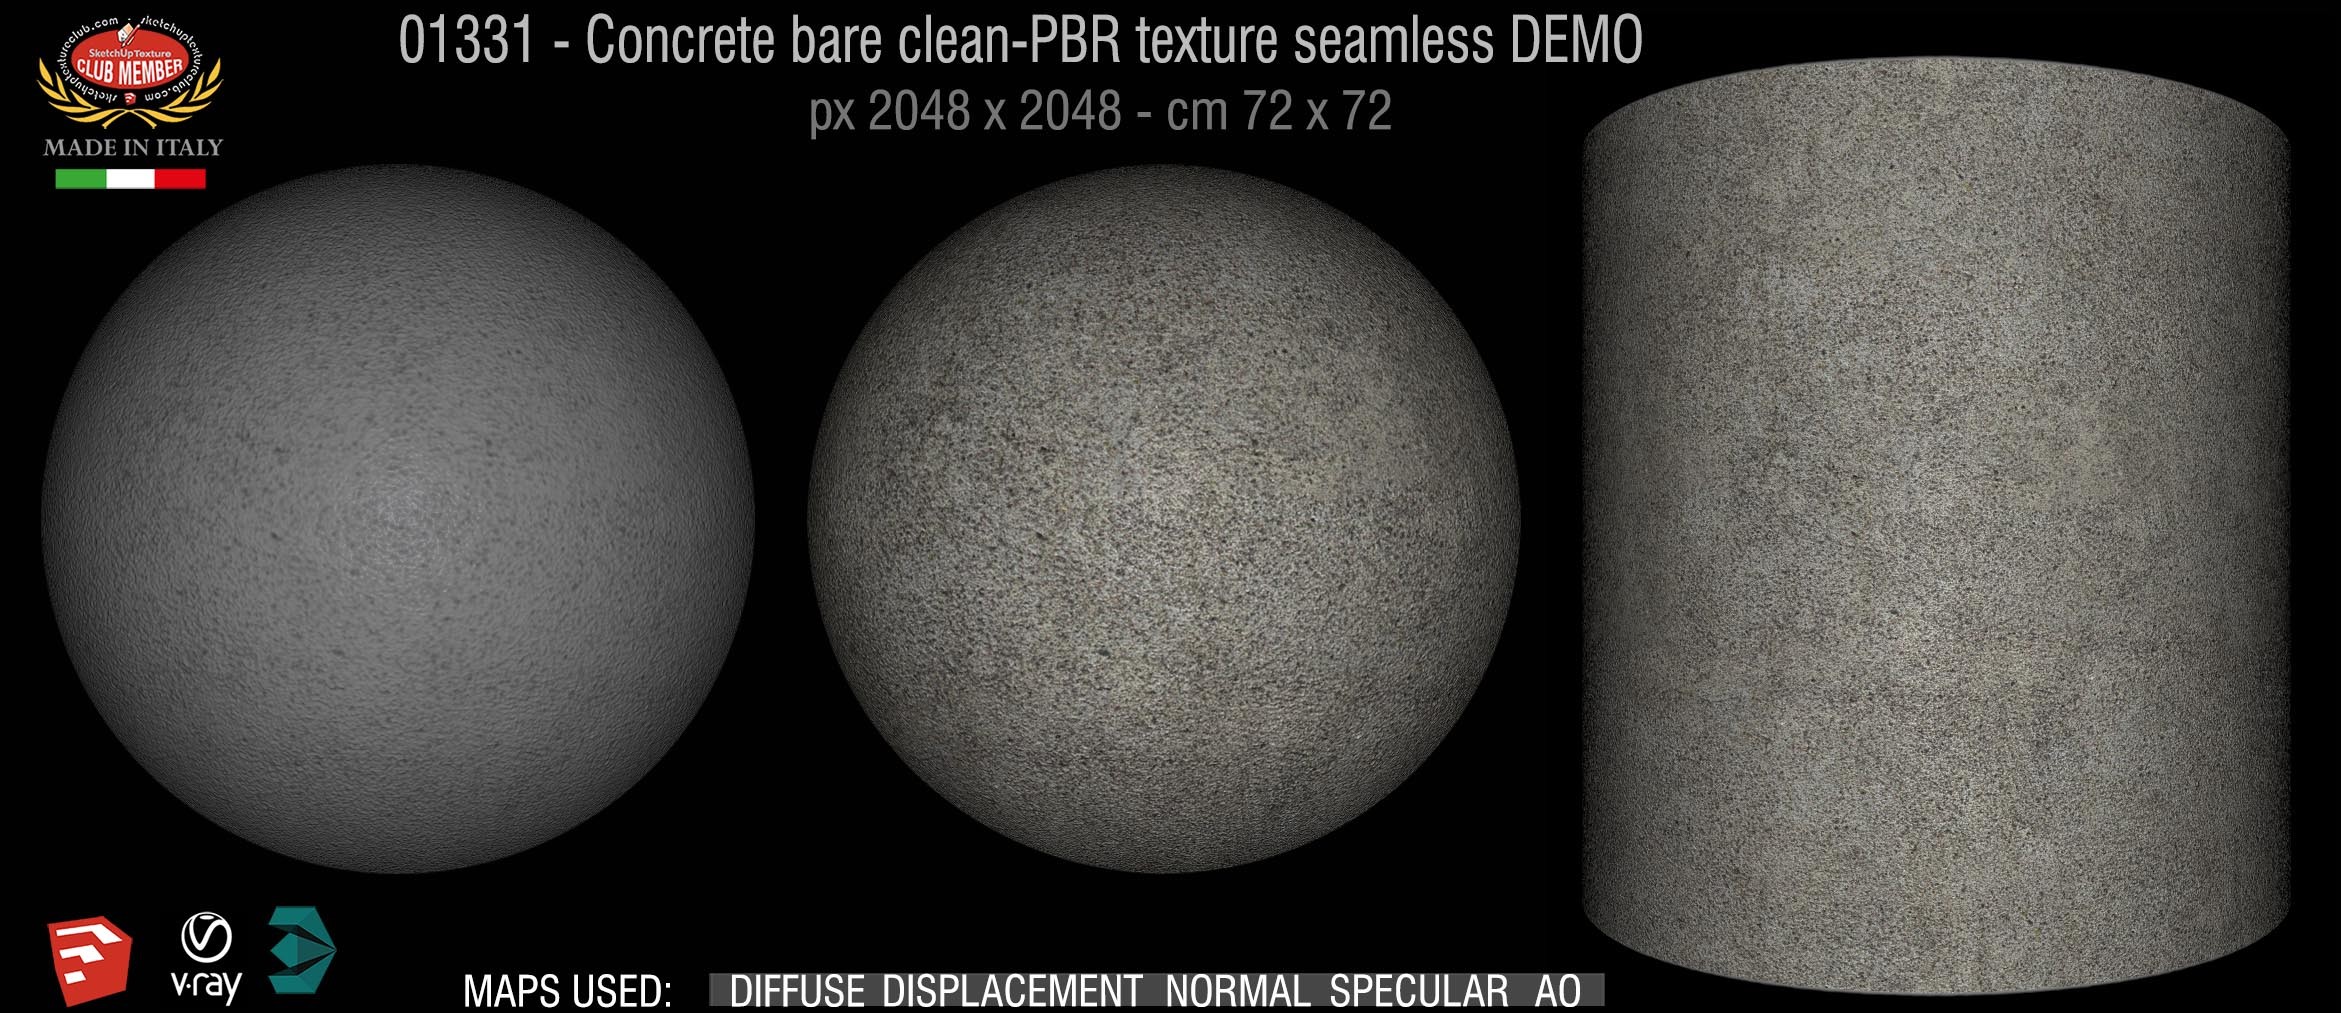 01331 Concrete bare clean-PBR texture seamless DEMO